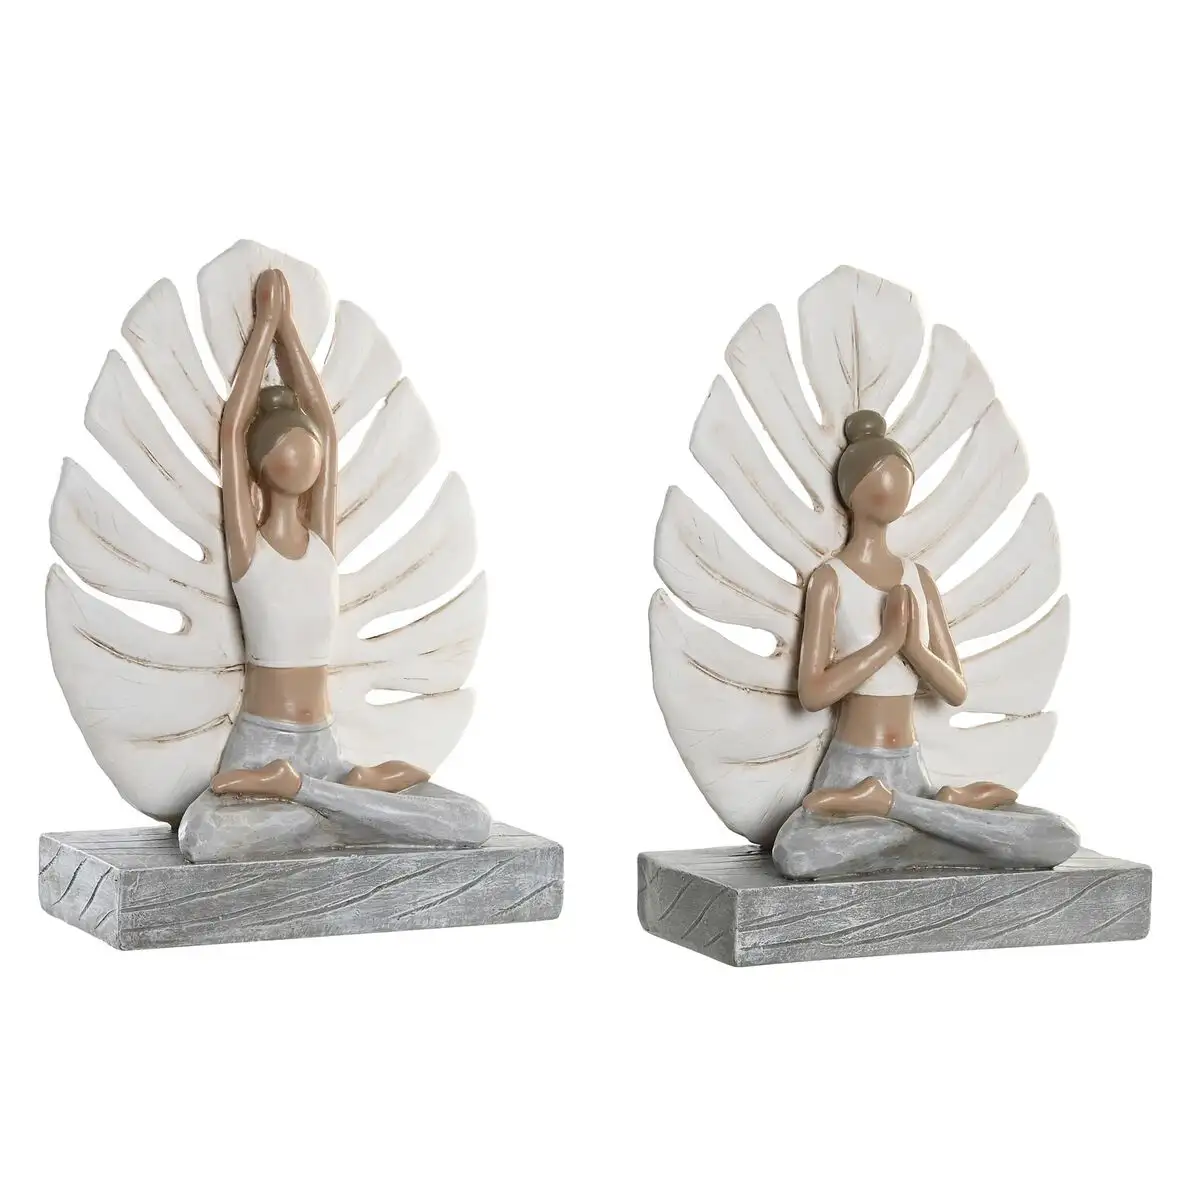 Figurine de corative dkd home decor 16 x 7 5 x 21 cm gris blanc yoga 2 unite s_6157. Bienvenue chez DIAYTAR SENEGAL - Où Chaque Détail Fait la Différence. Découvrez notre sélection méticuleuse et choisissez des articles qui répondent à vos exigences.